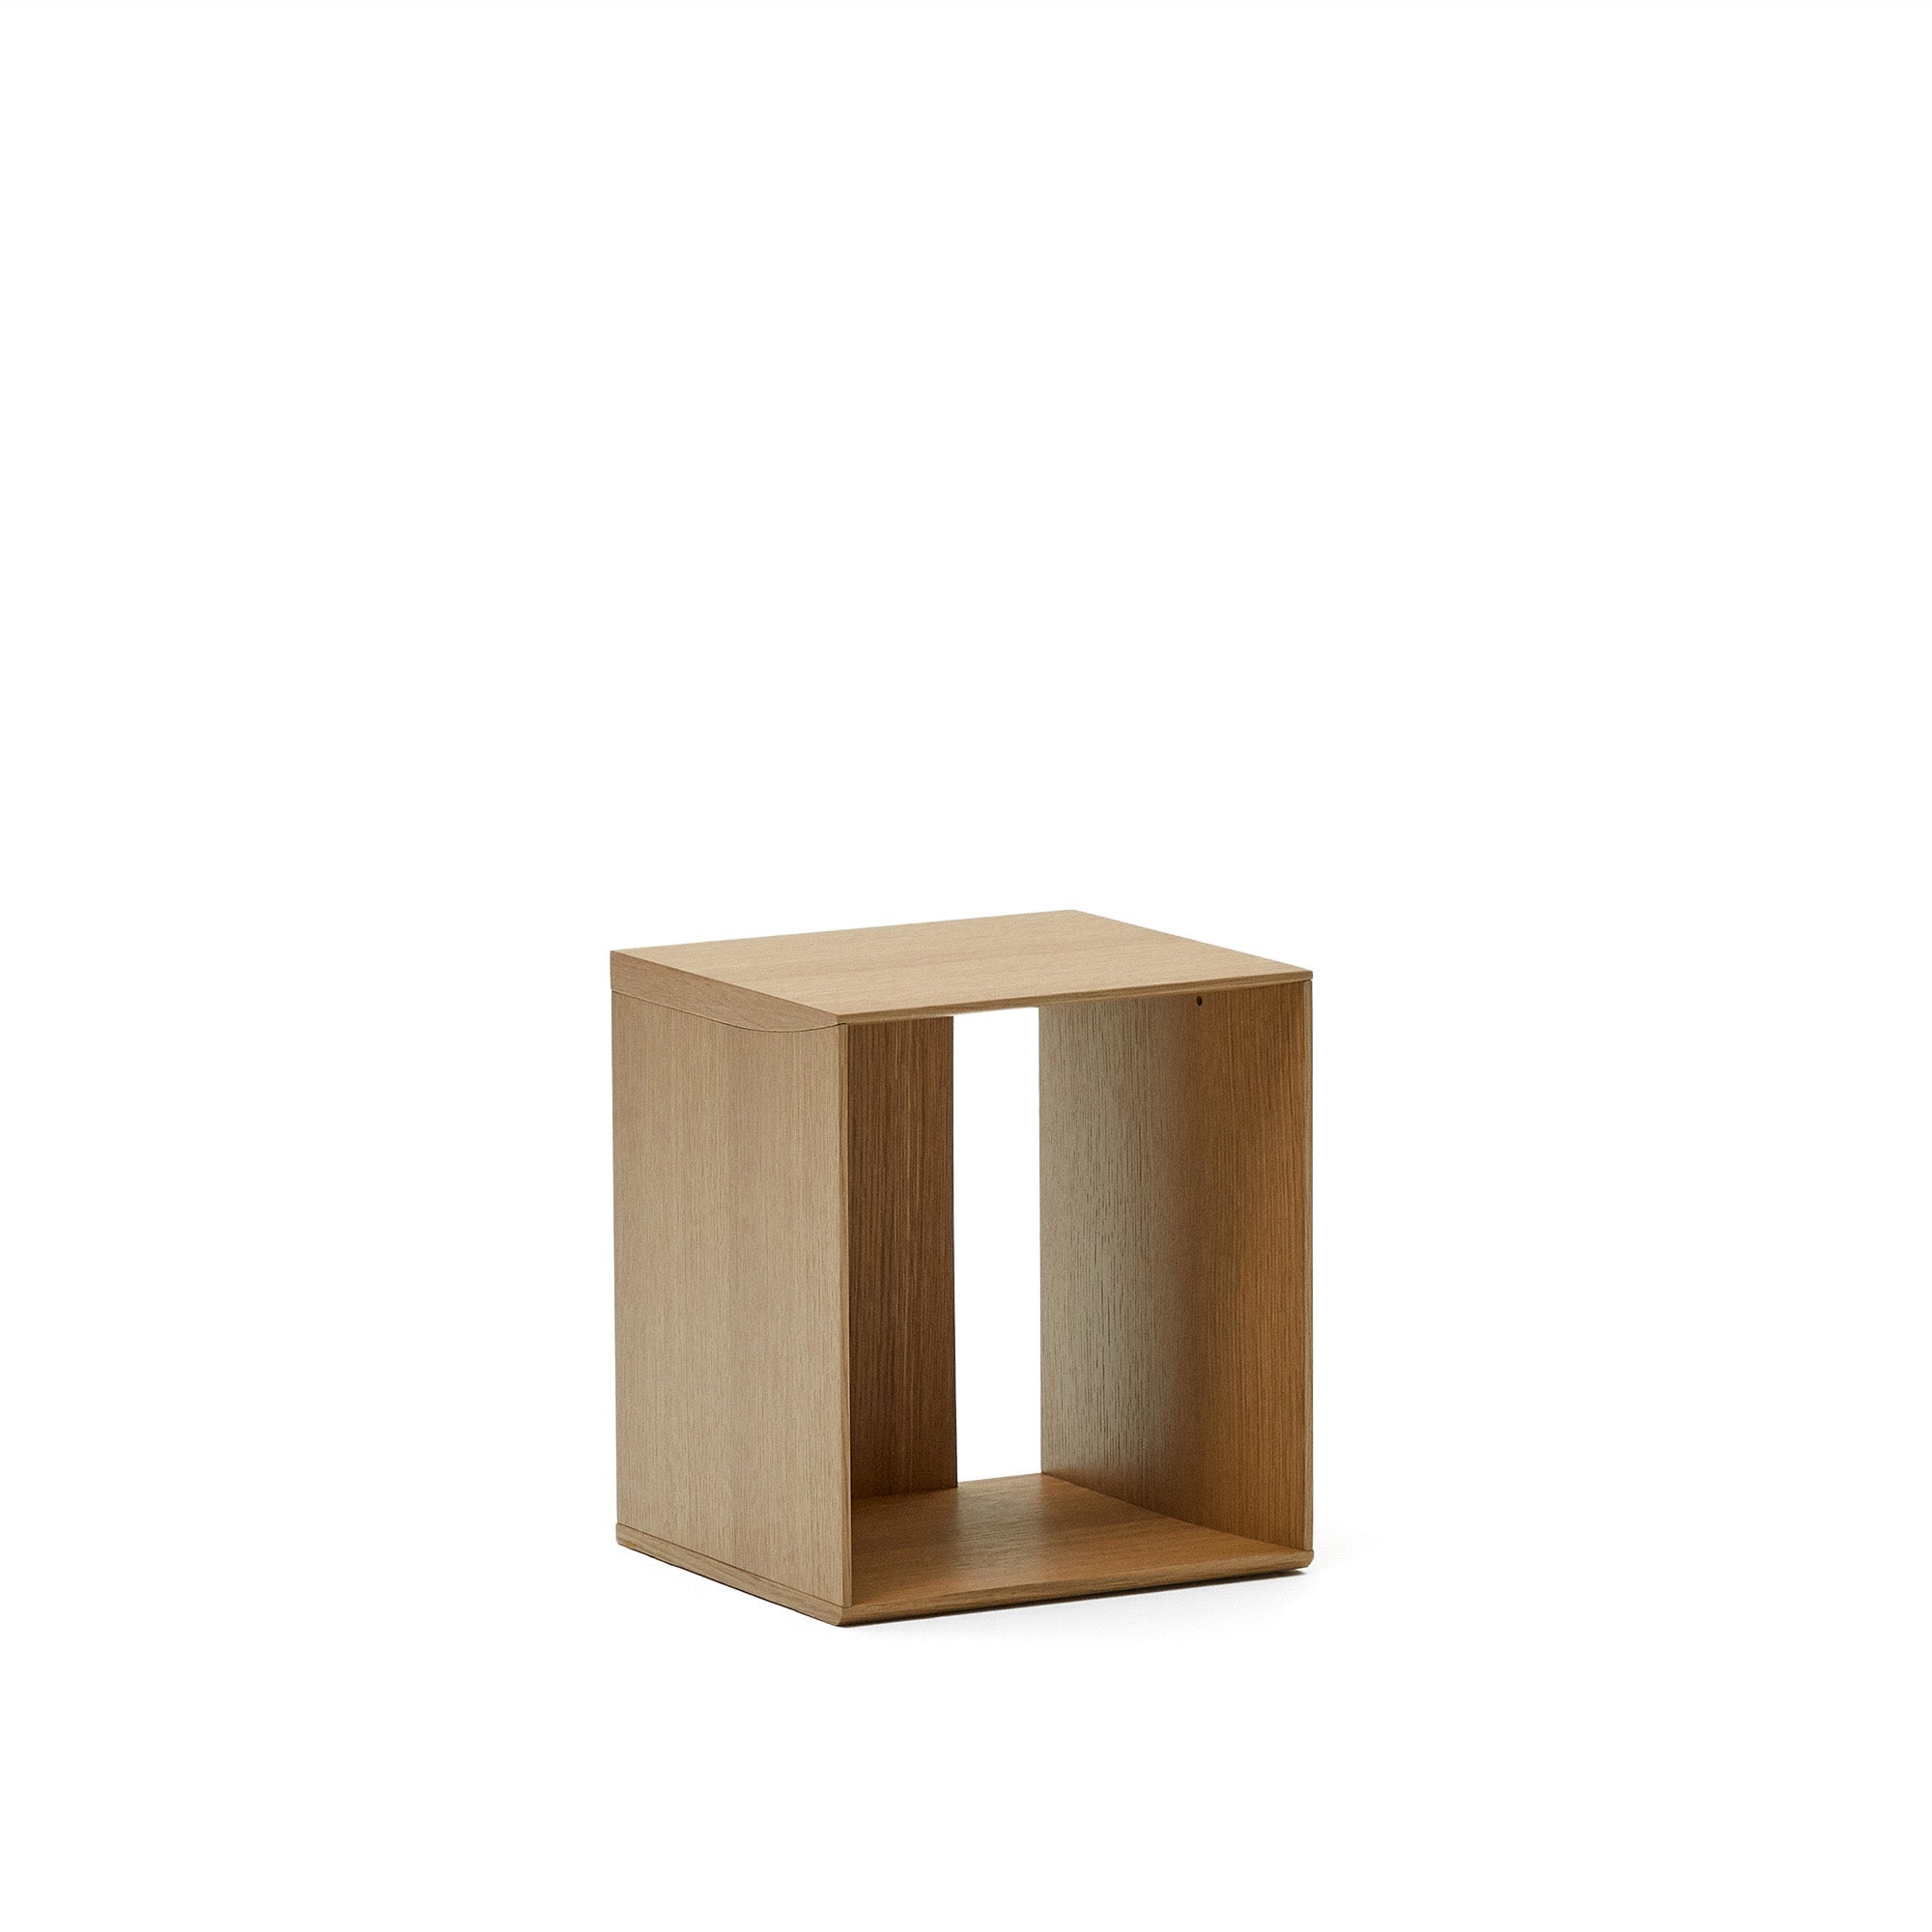 Litto small shelf module in oak veneer, 34 x 38 cm